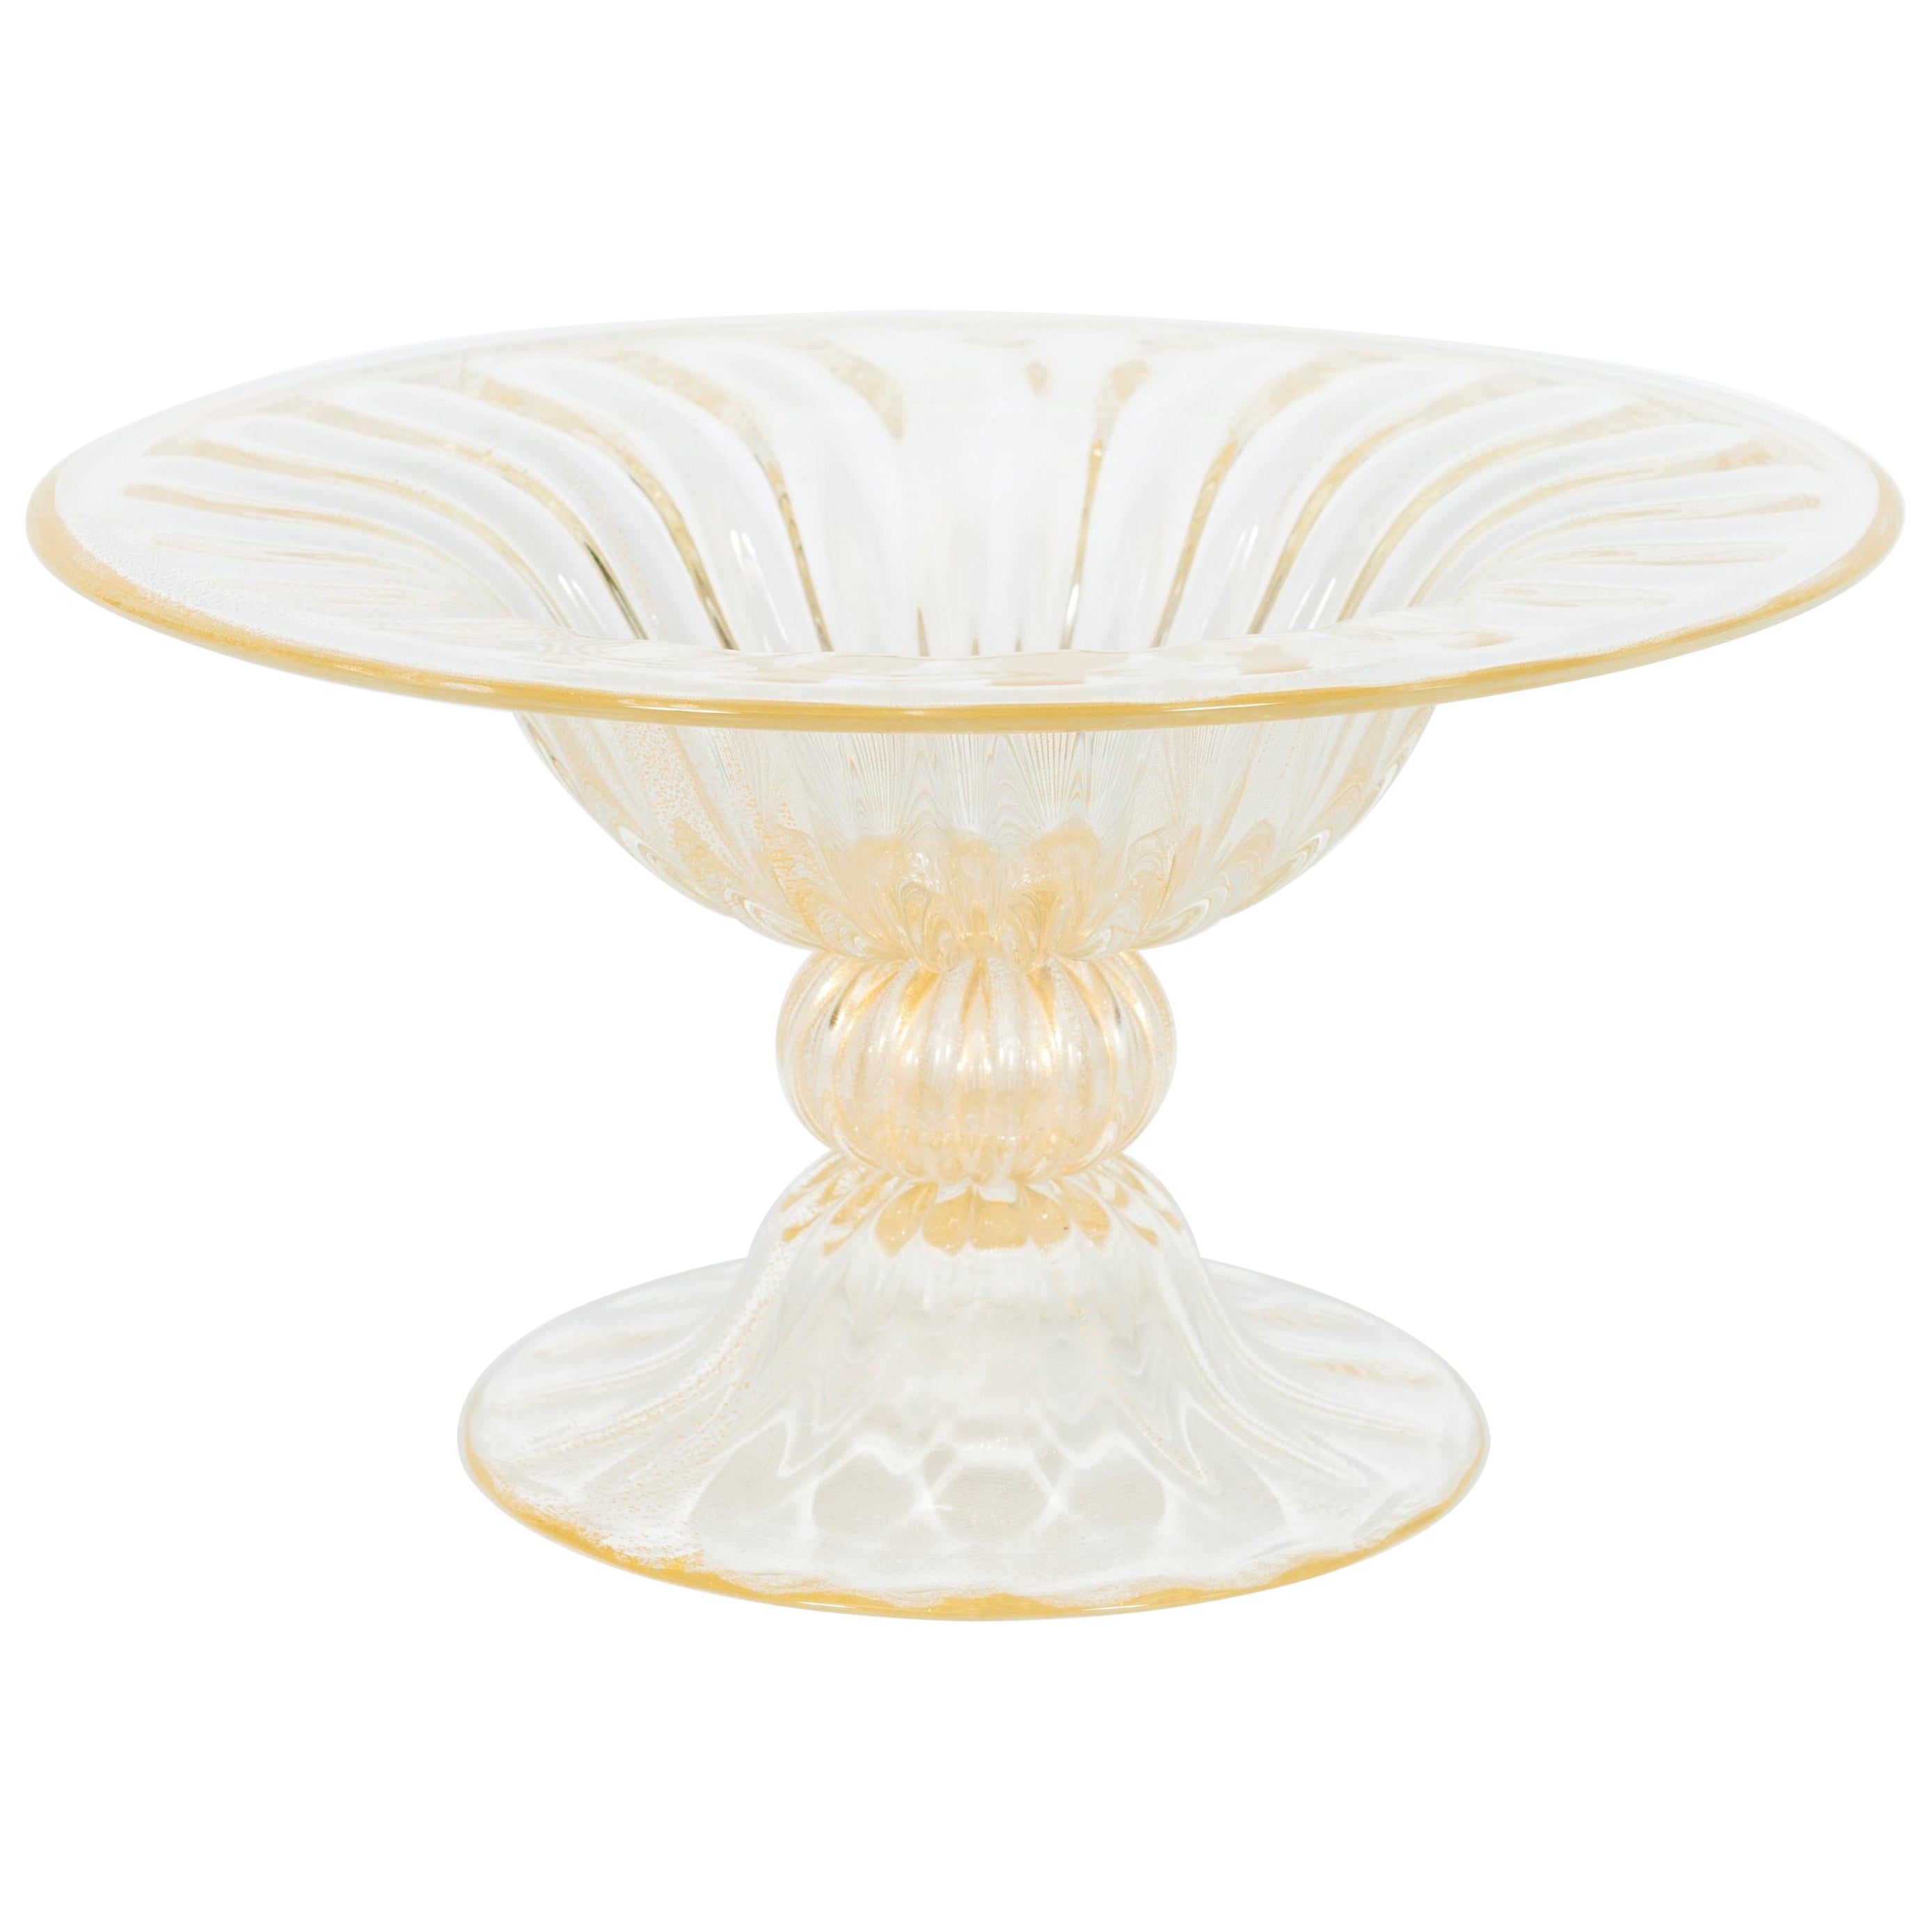 Contemporary Italian Murano Glass Decorative Bowl with 24kt Gold, Alberto Donà